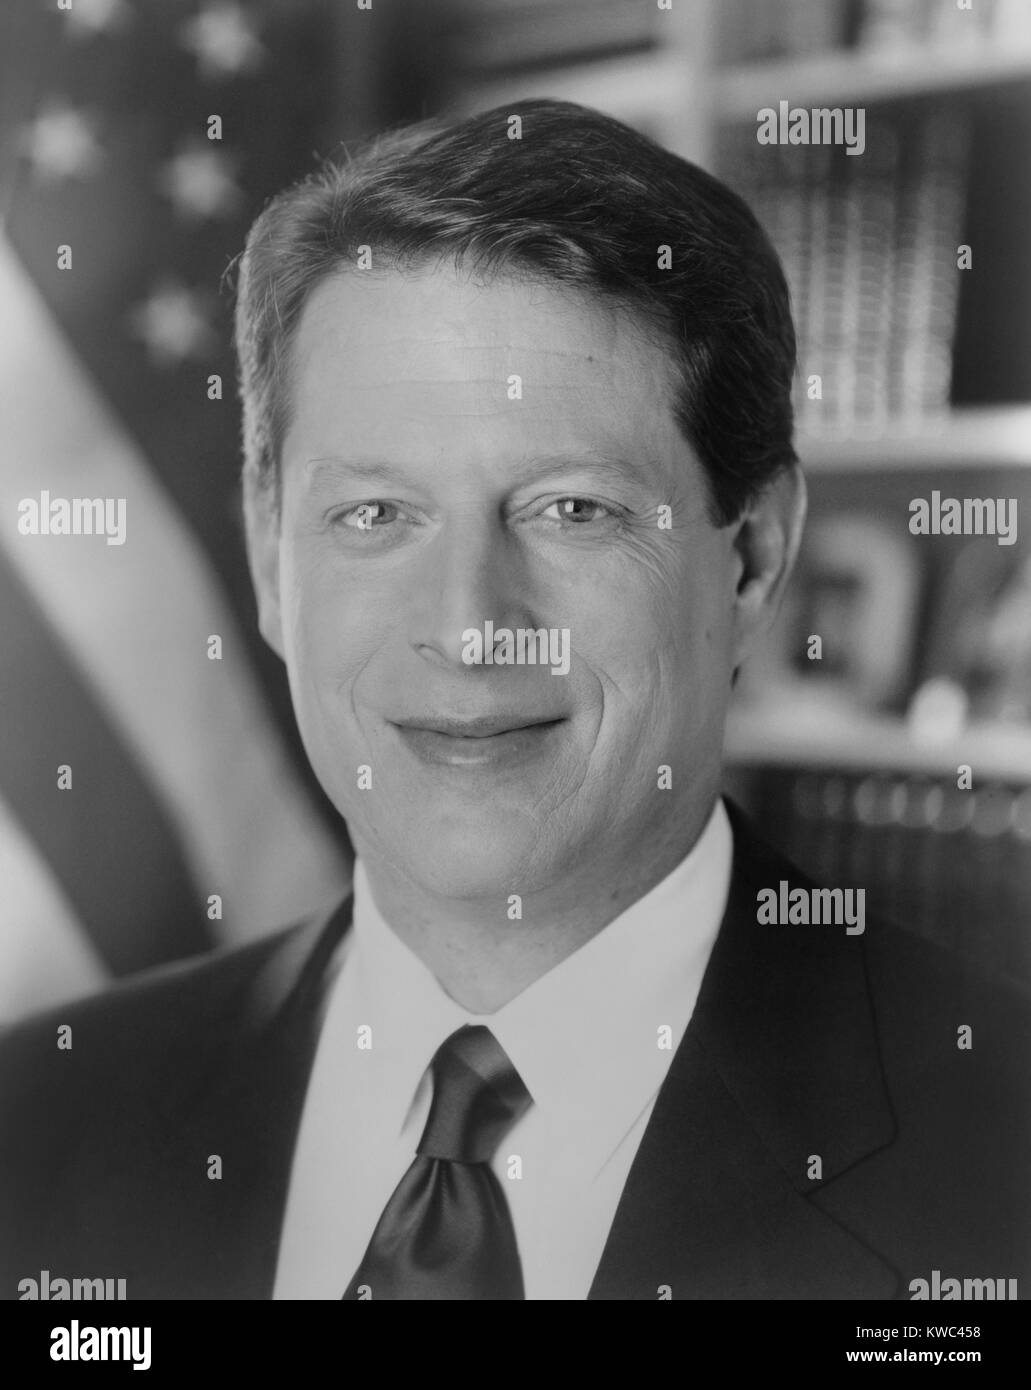 Le sénateur Albert Gore en 1992, comme candidat à la vice-présidence. Il a servi deux mandats avec le président Bill Clinton et a été le candidat démocrate qui a perdu à George W. Bush dans l'élection de 2000. (BSLOC   2015 14 82) Banque D'Images